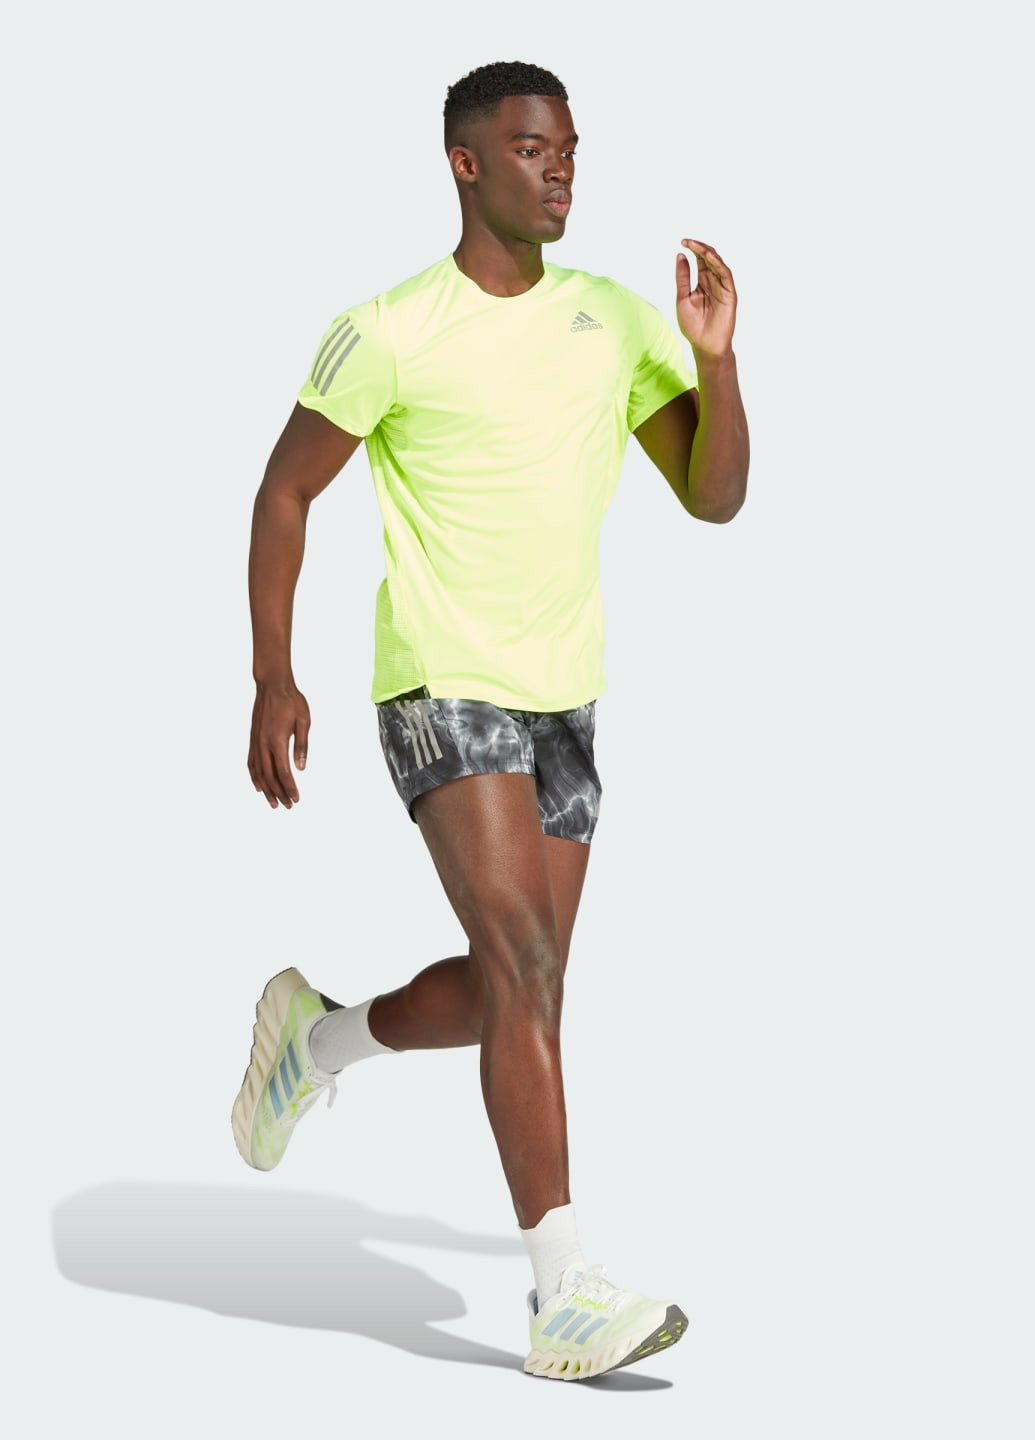 Зеленая футболка для бега own the run adidas